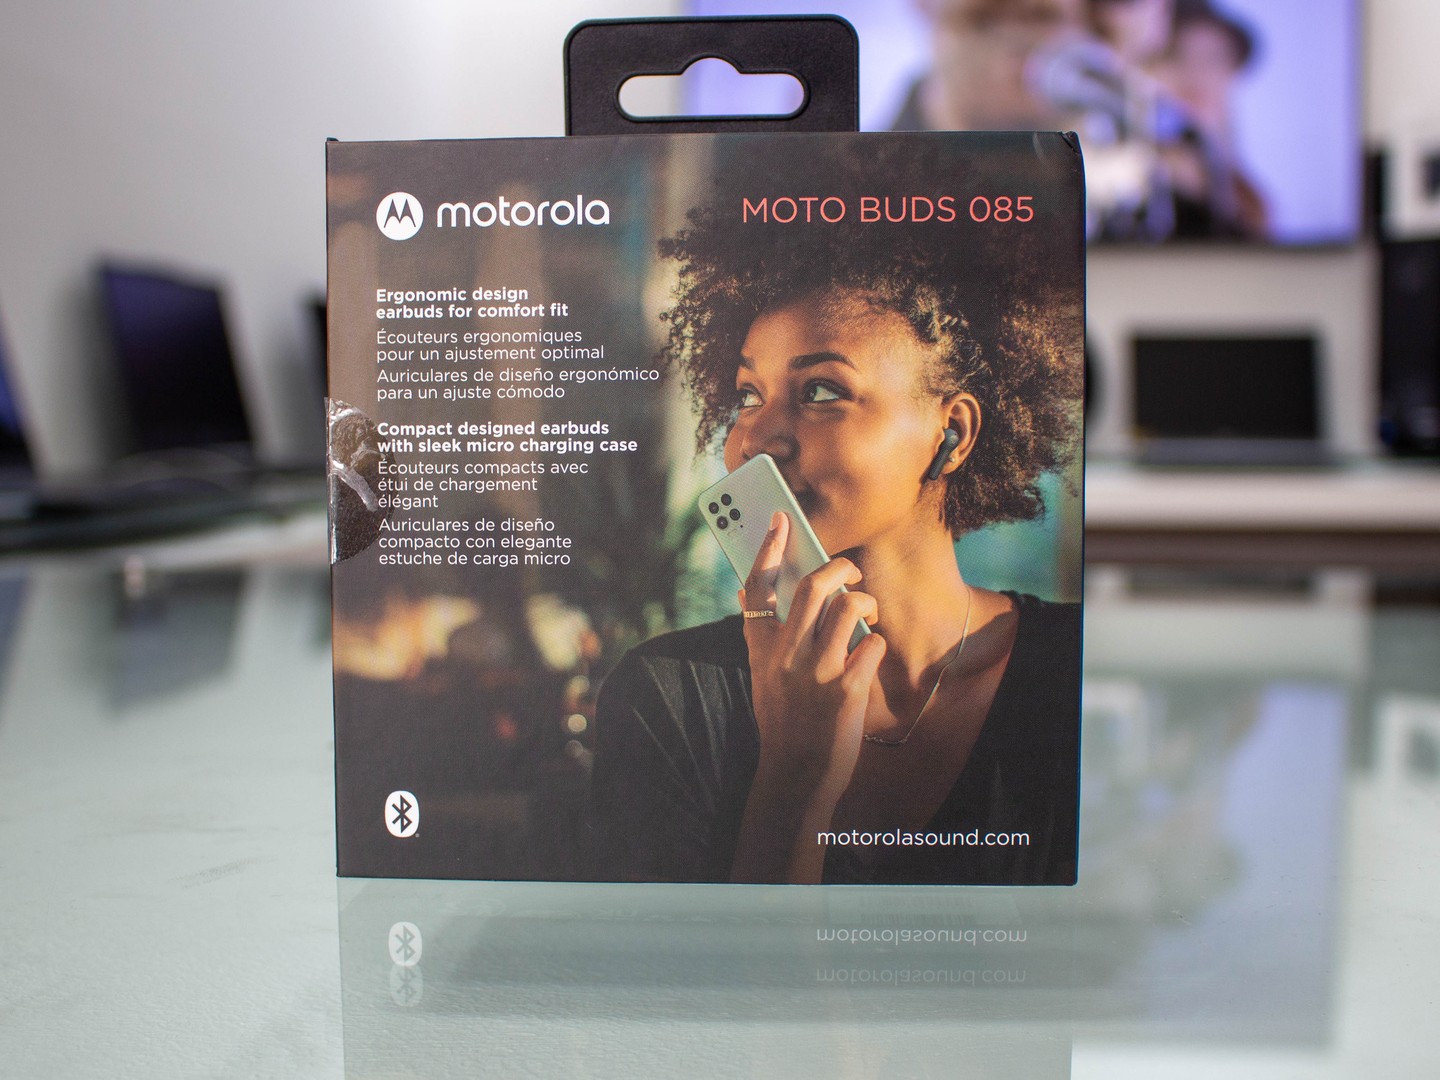 camaras y audio - Headset Motorola Moto Buds 085/Tiempo de reproducción 15 horas/Resistente agua 1